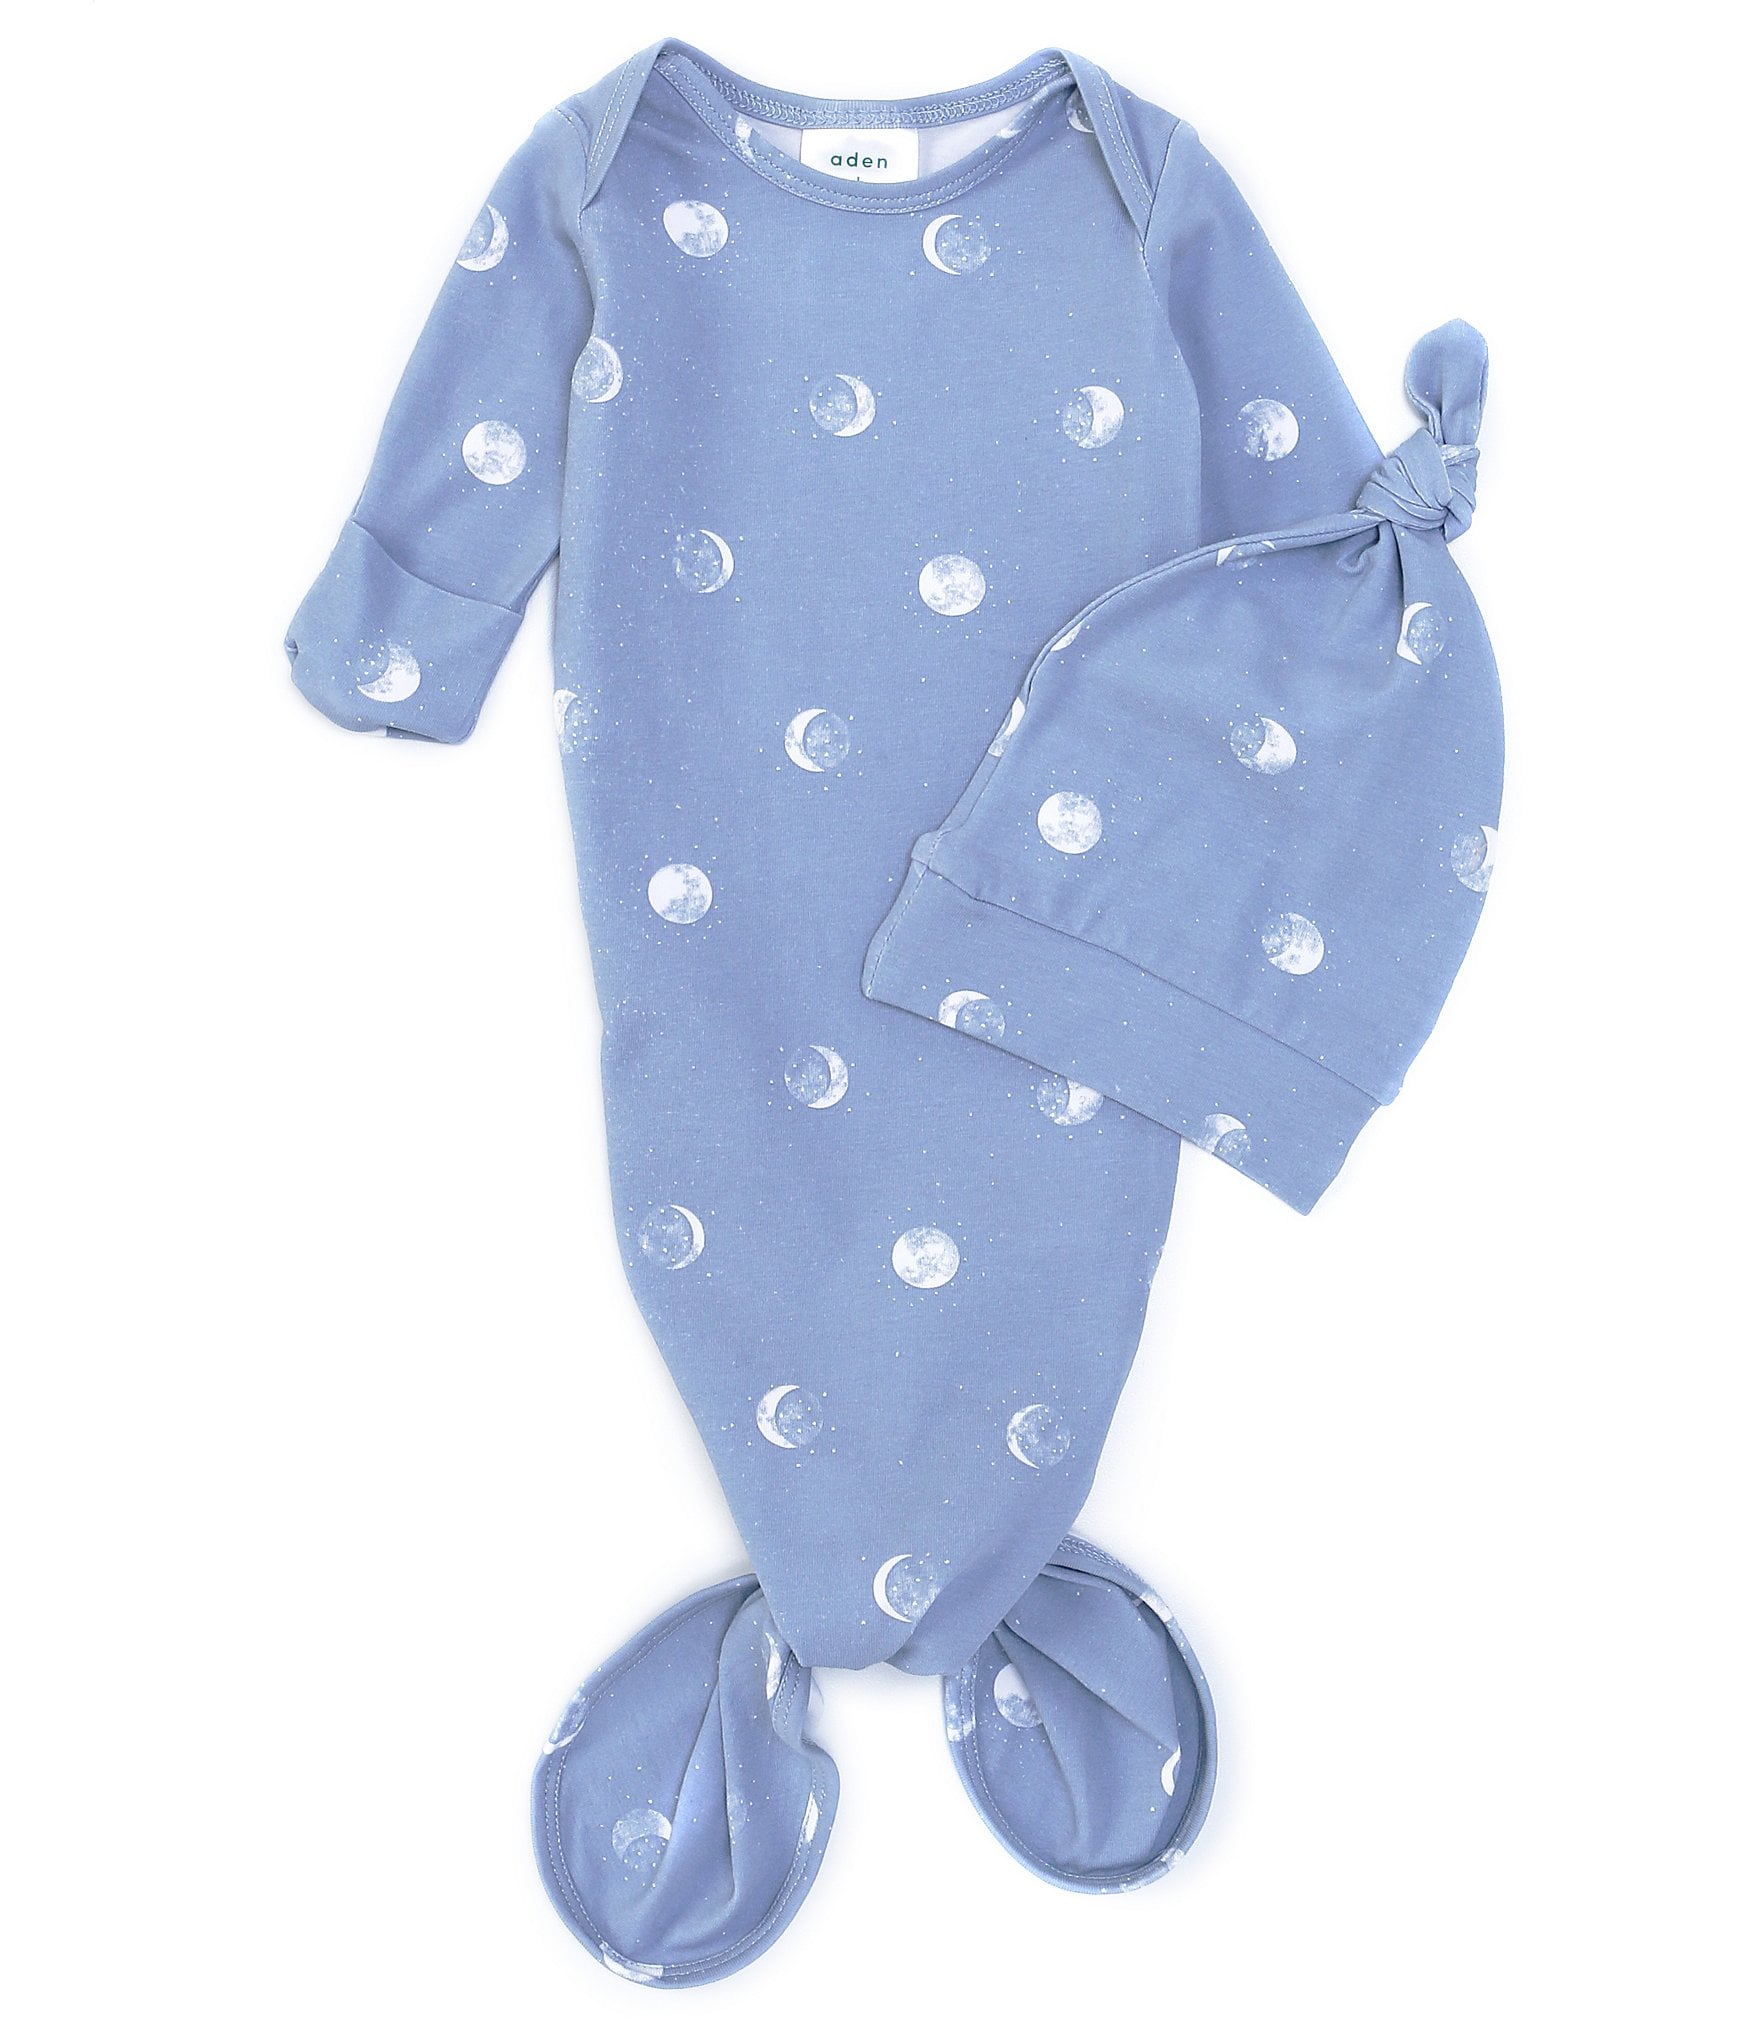 Aden + Anais Baby Newborn-3 Months Long-Sleeve Blue Moon Gown & Hat Set ...